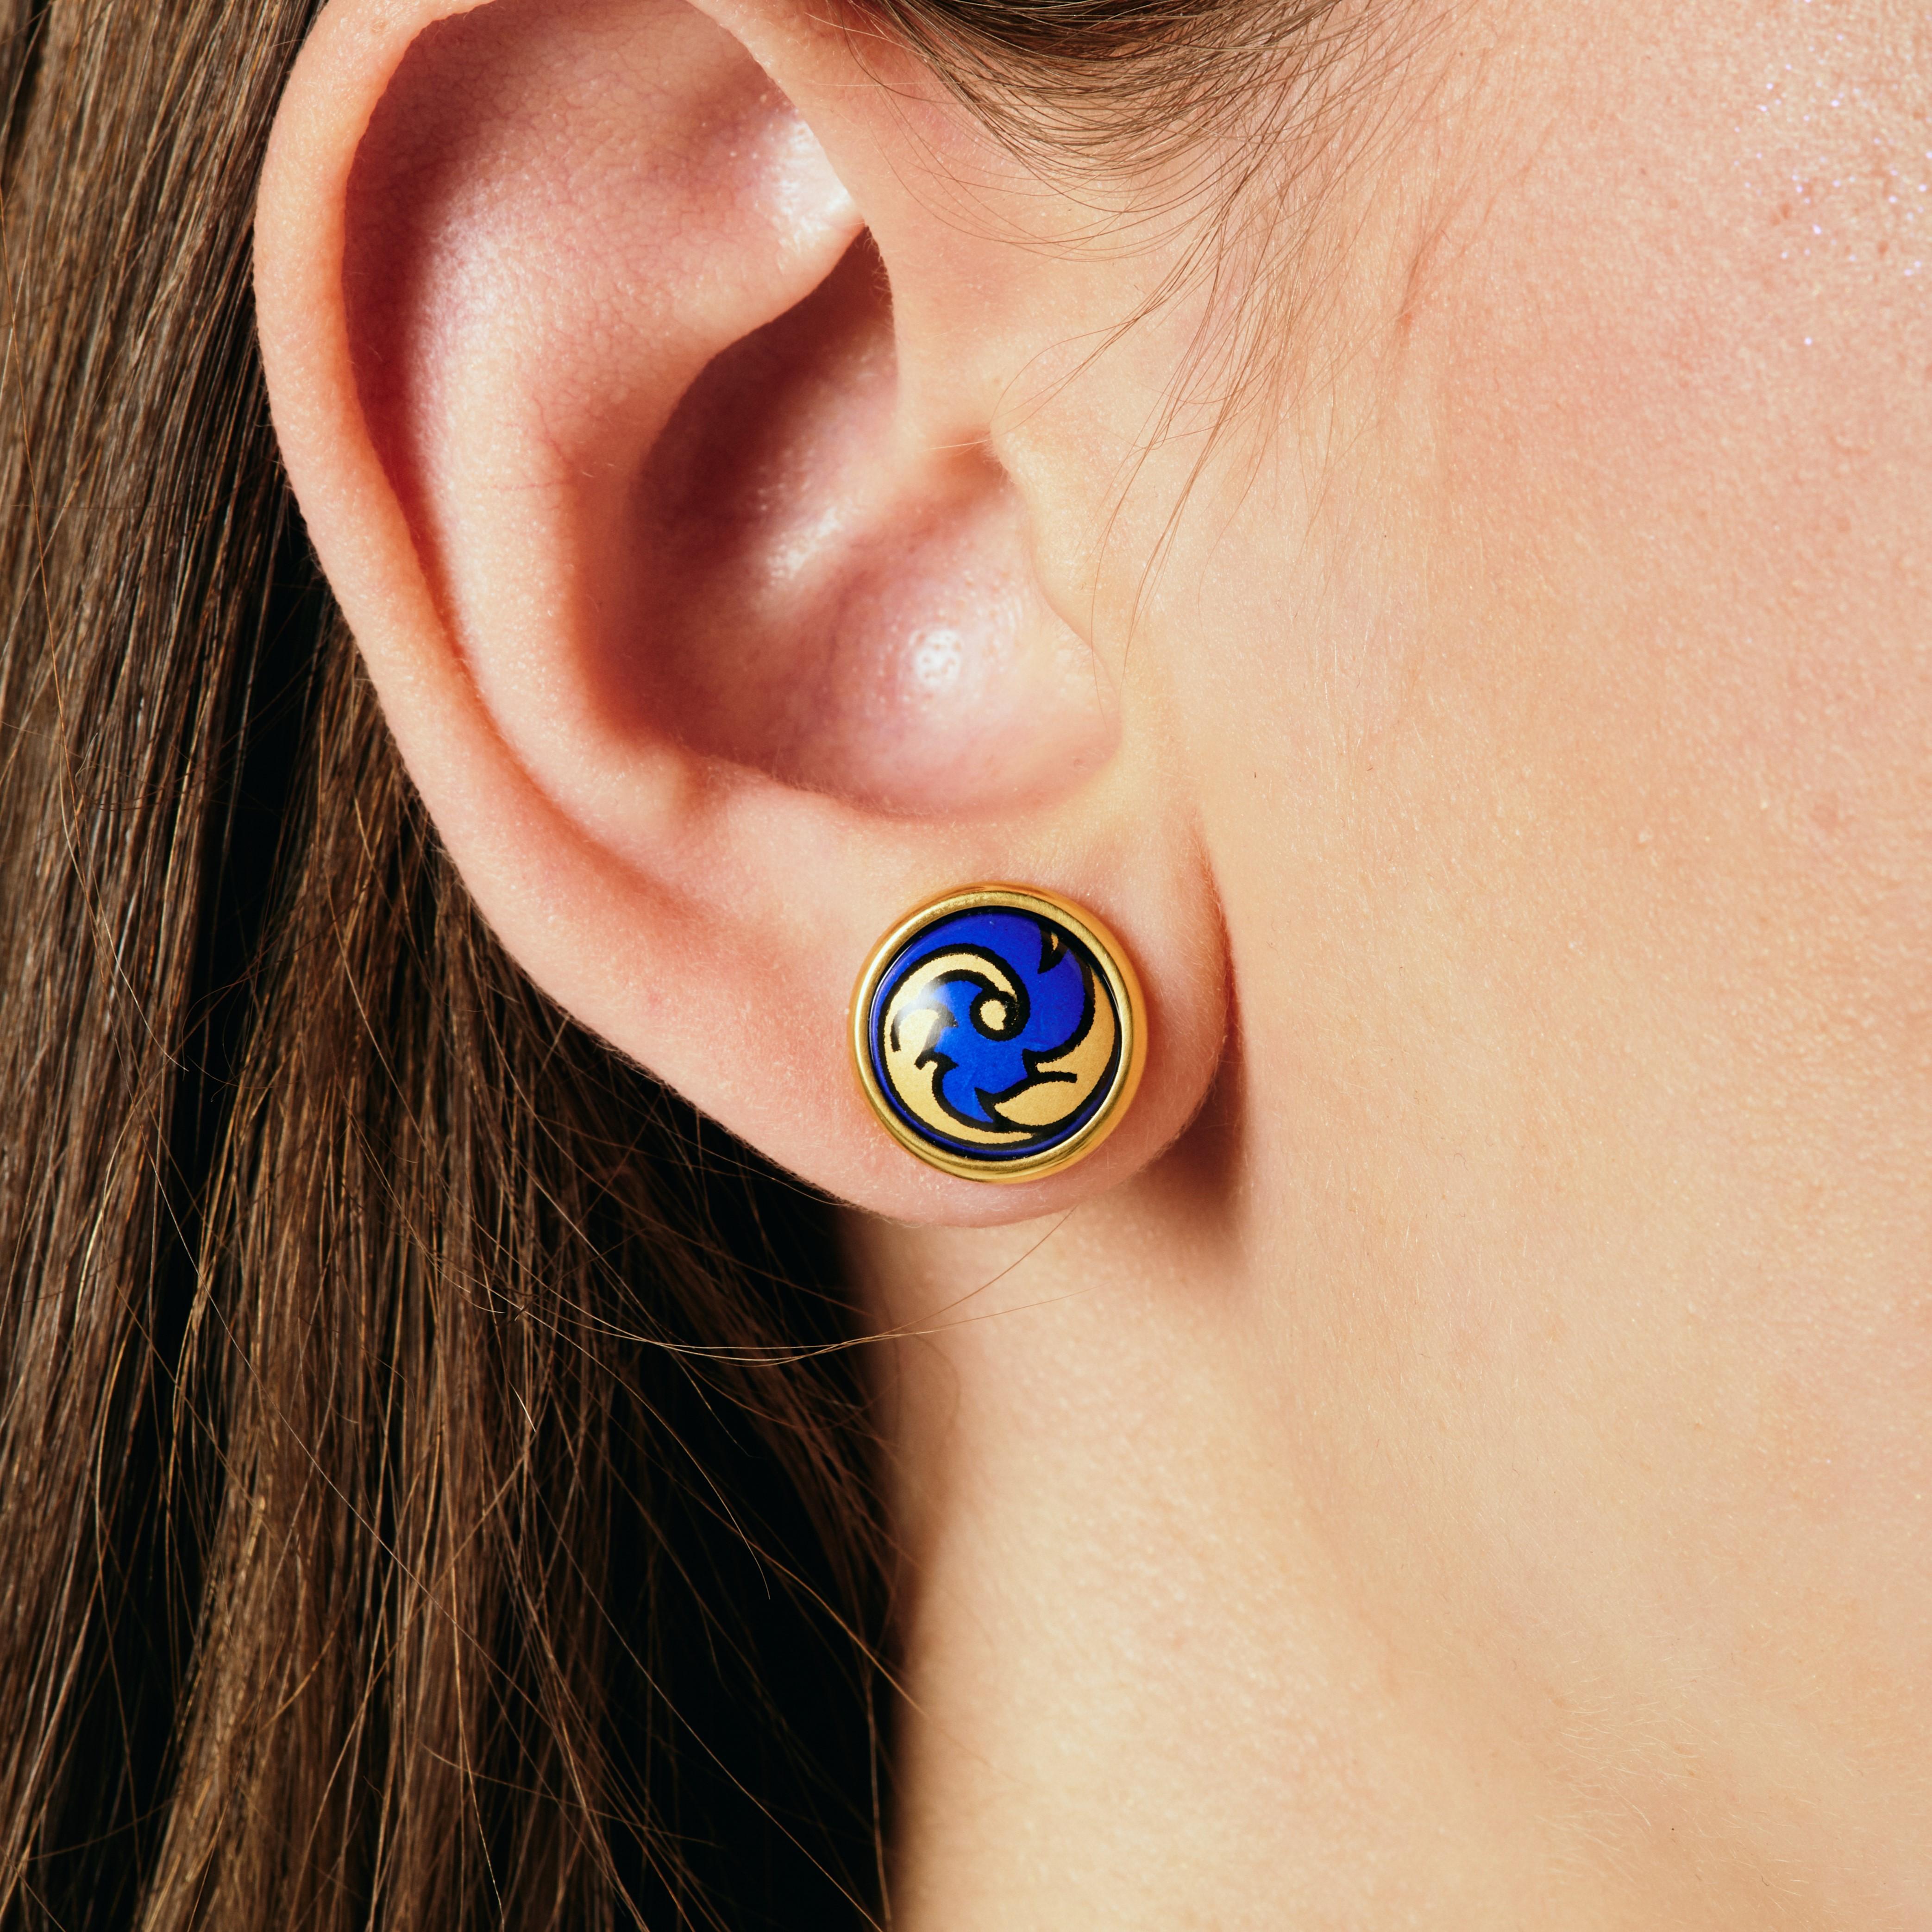 Wir stellen unsere Elle-Ohrringe vor. Gönnen Sie sich einen exquisiten Stil mit unseren Ohrringen aus 18k vergoldetem Edelstahl. Diese hypoallergenen Ohrringe, die von Hand mit leuchtender Feueremaille bemalt wurden, sind ein wahres Meisterwerk an